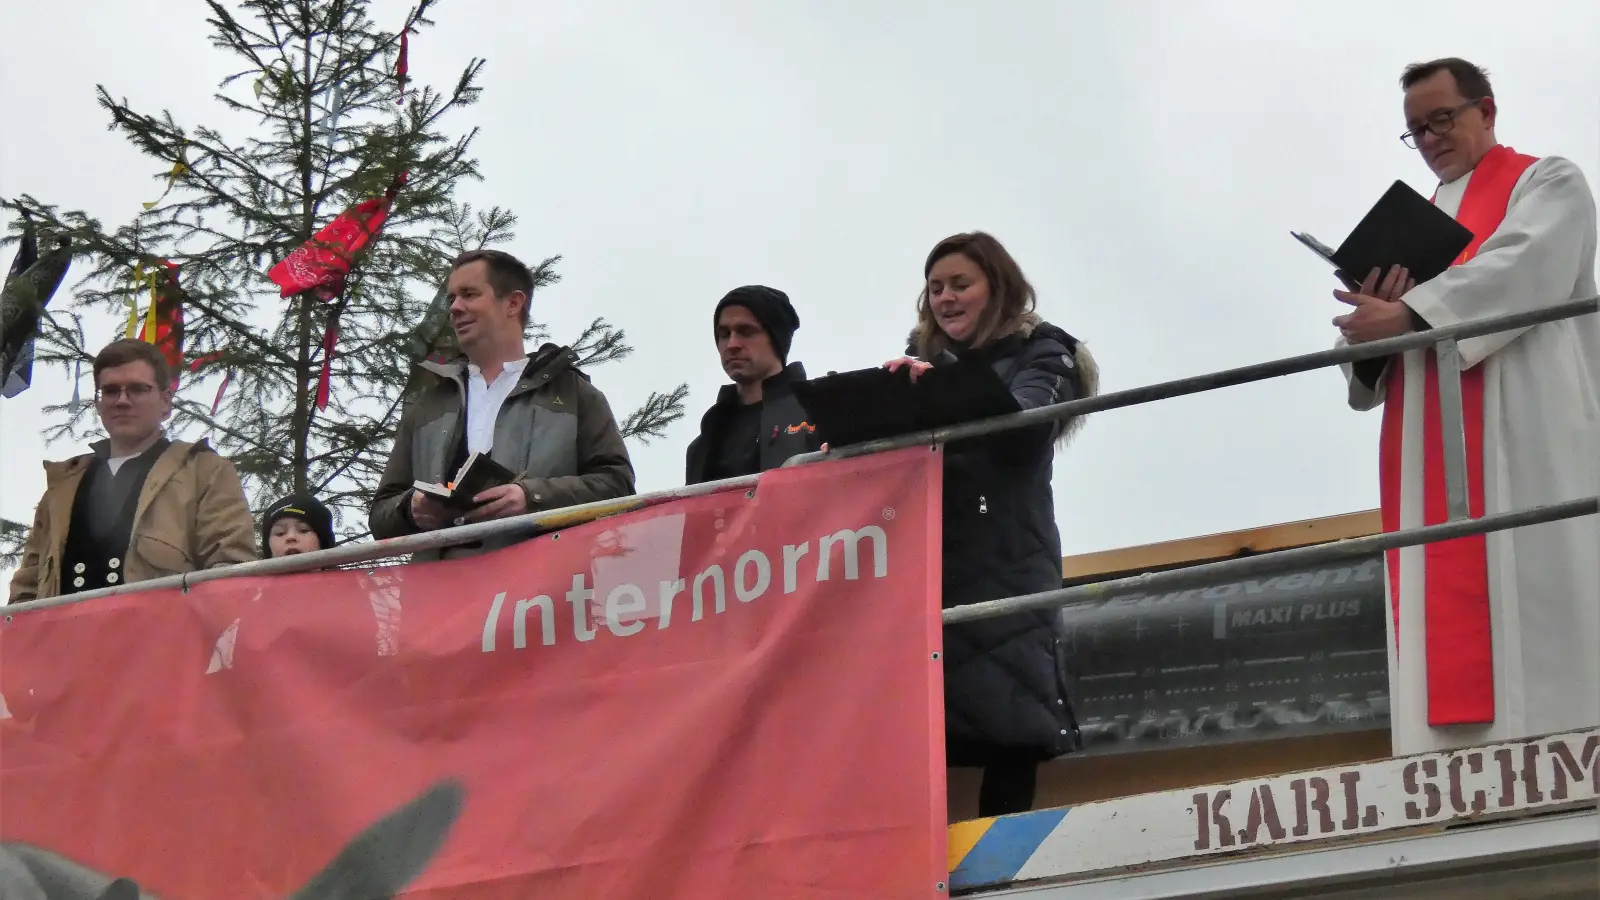 Zum Richtfest kletterten sie traditionsgemäß auf das Dach der neuen Kinderkrippe: Betriebsleiter Florian Braumandl (Zweiter von links), Diakon Jörg Schwarzbeck und Bürgermeisterin Margarita Kerschbaum (von rechts) (Foto: Karl-Heinz Gisbertz)